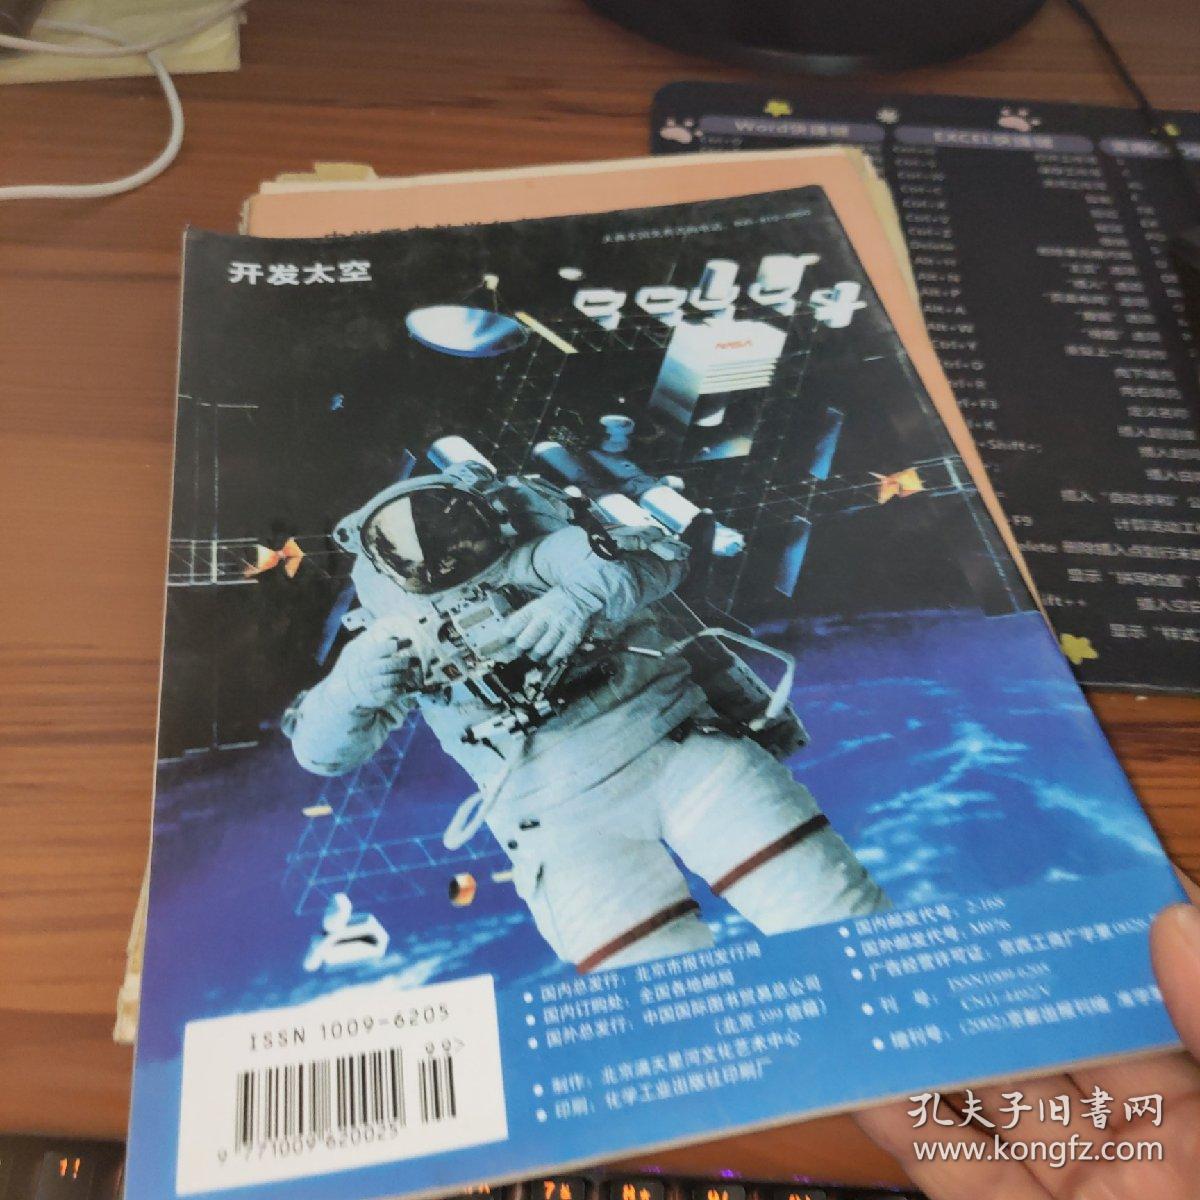 太空探索2002增刊、太空探索2005增刊(2本合售